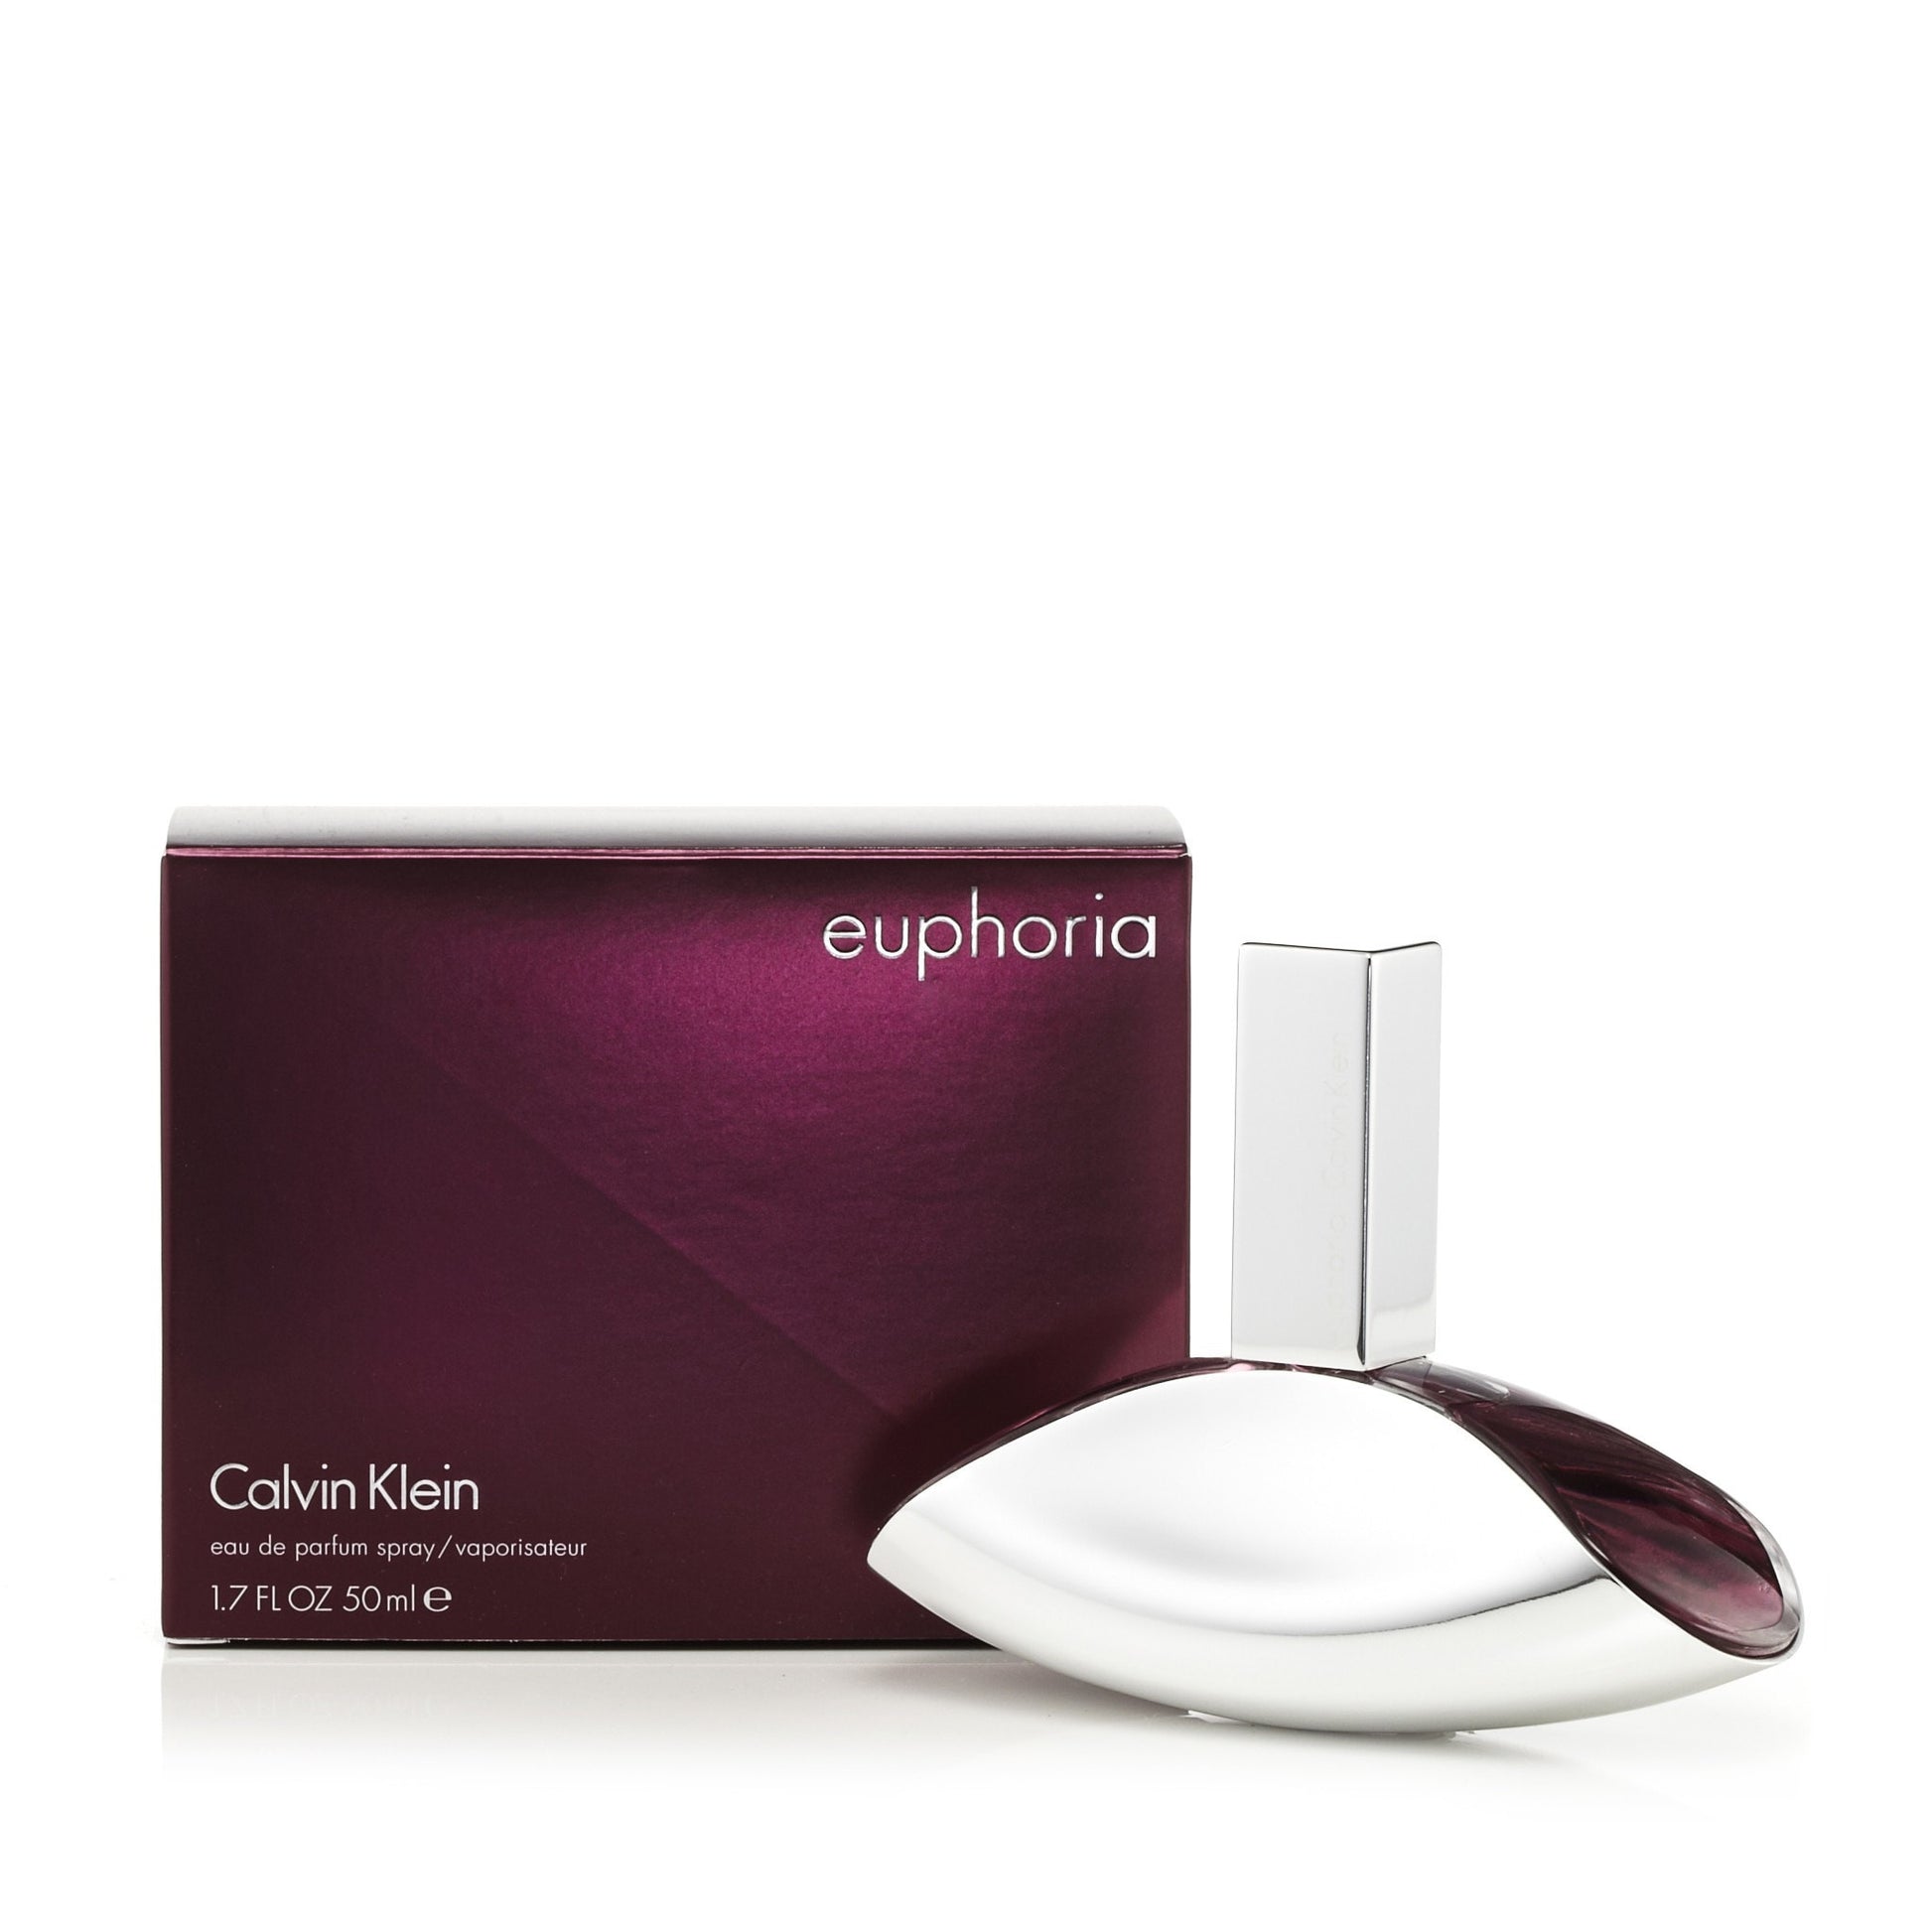 Euphoria Eau de Parfum Spray for Women by Calvin Klein 1.7 oz. Click to open in modal